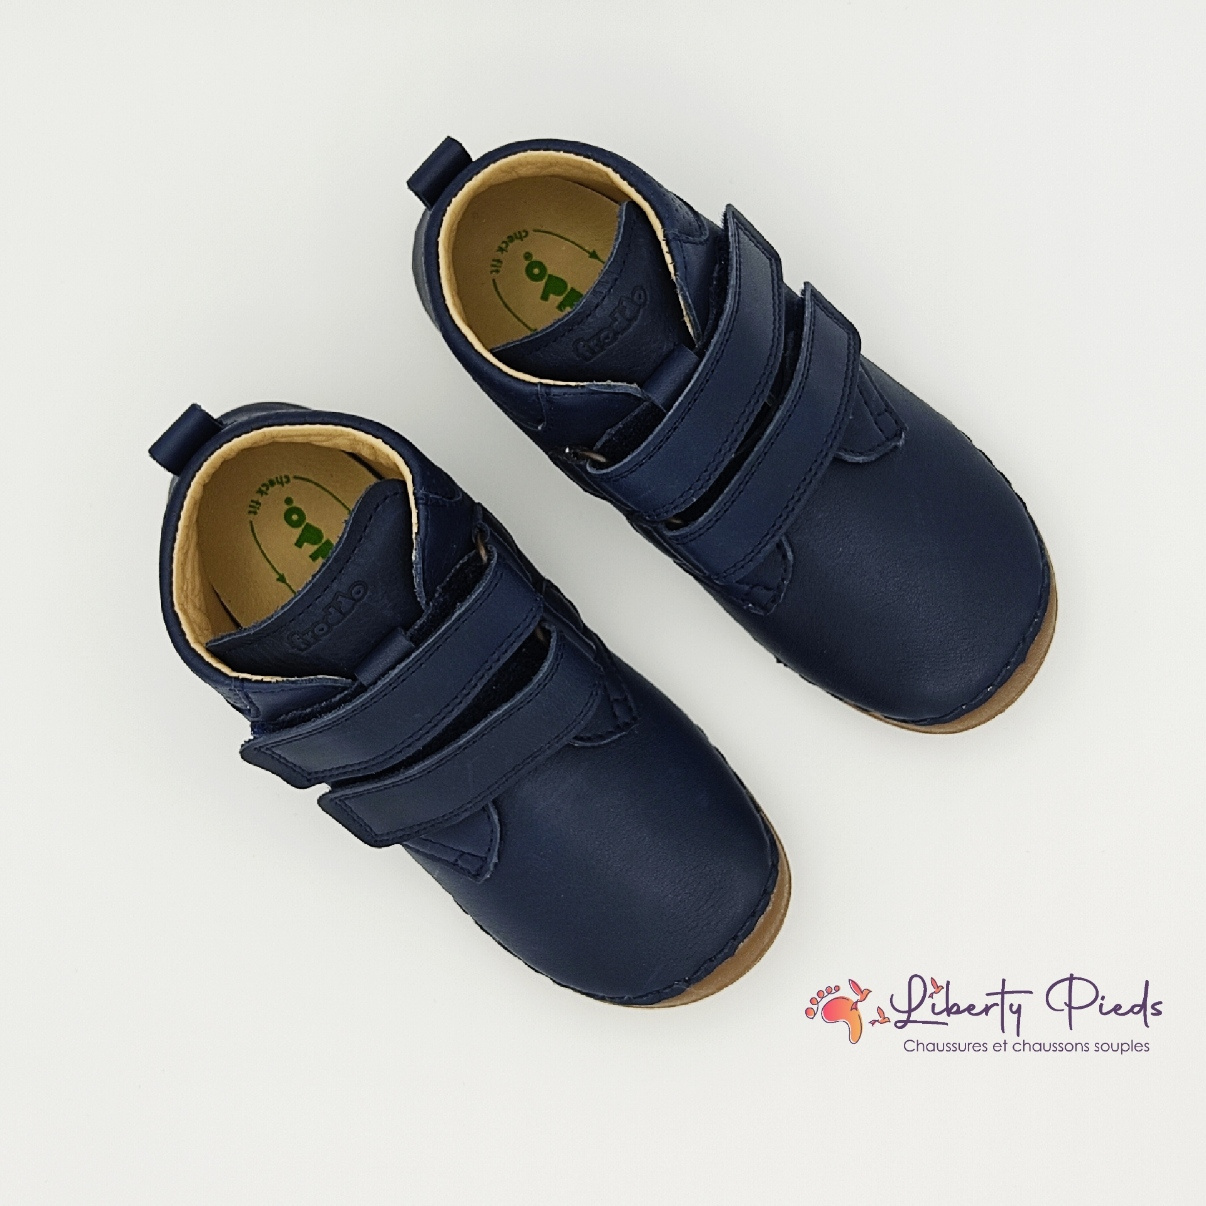 chaussures en cuir froddo paix velcro dark blue sur la boutique liberty pieds (12)